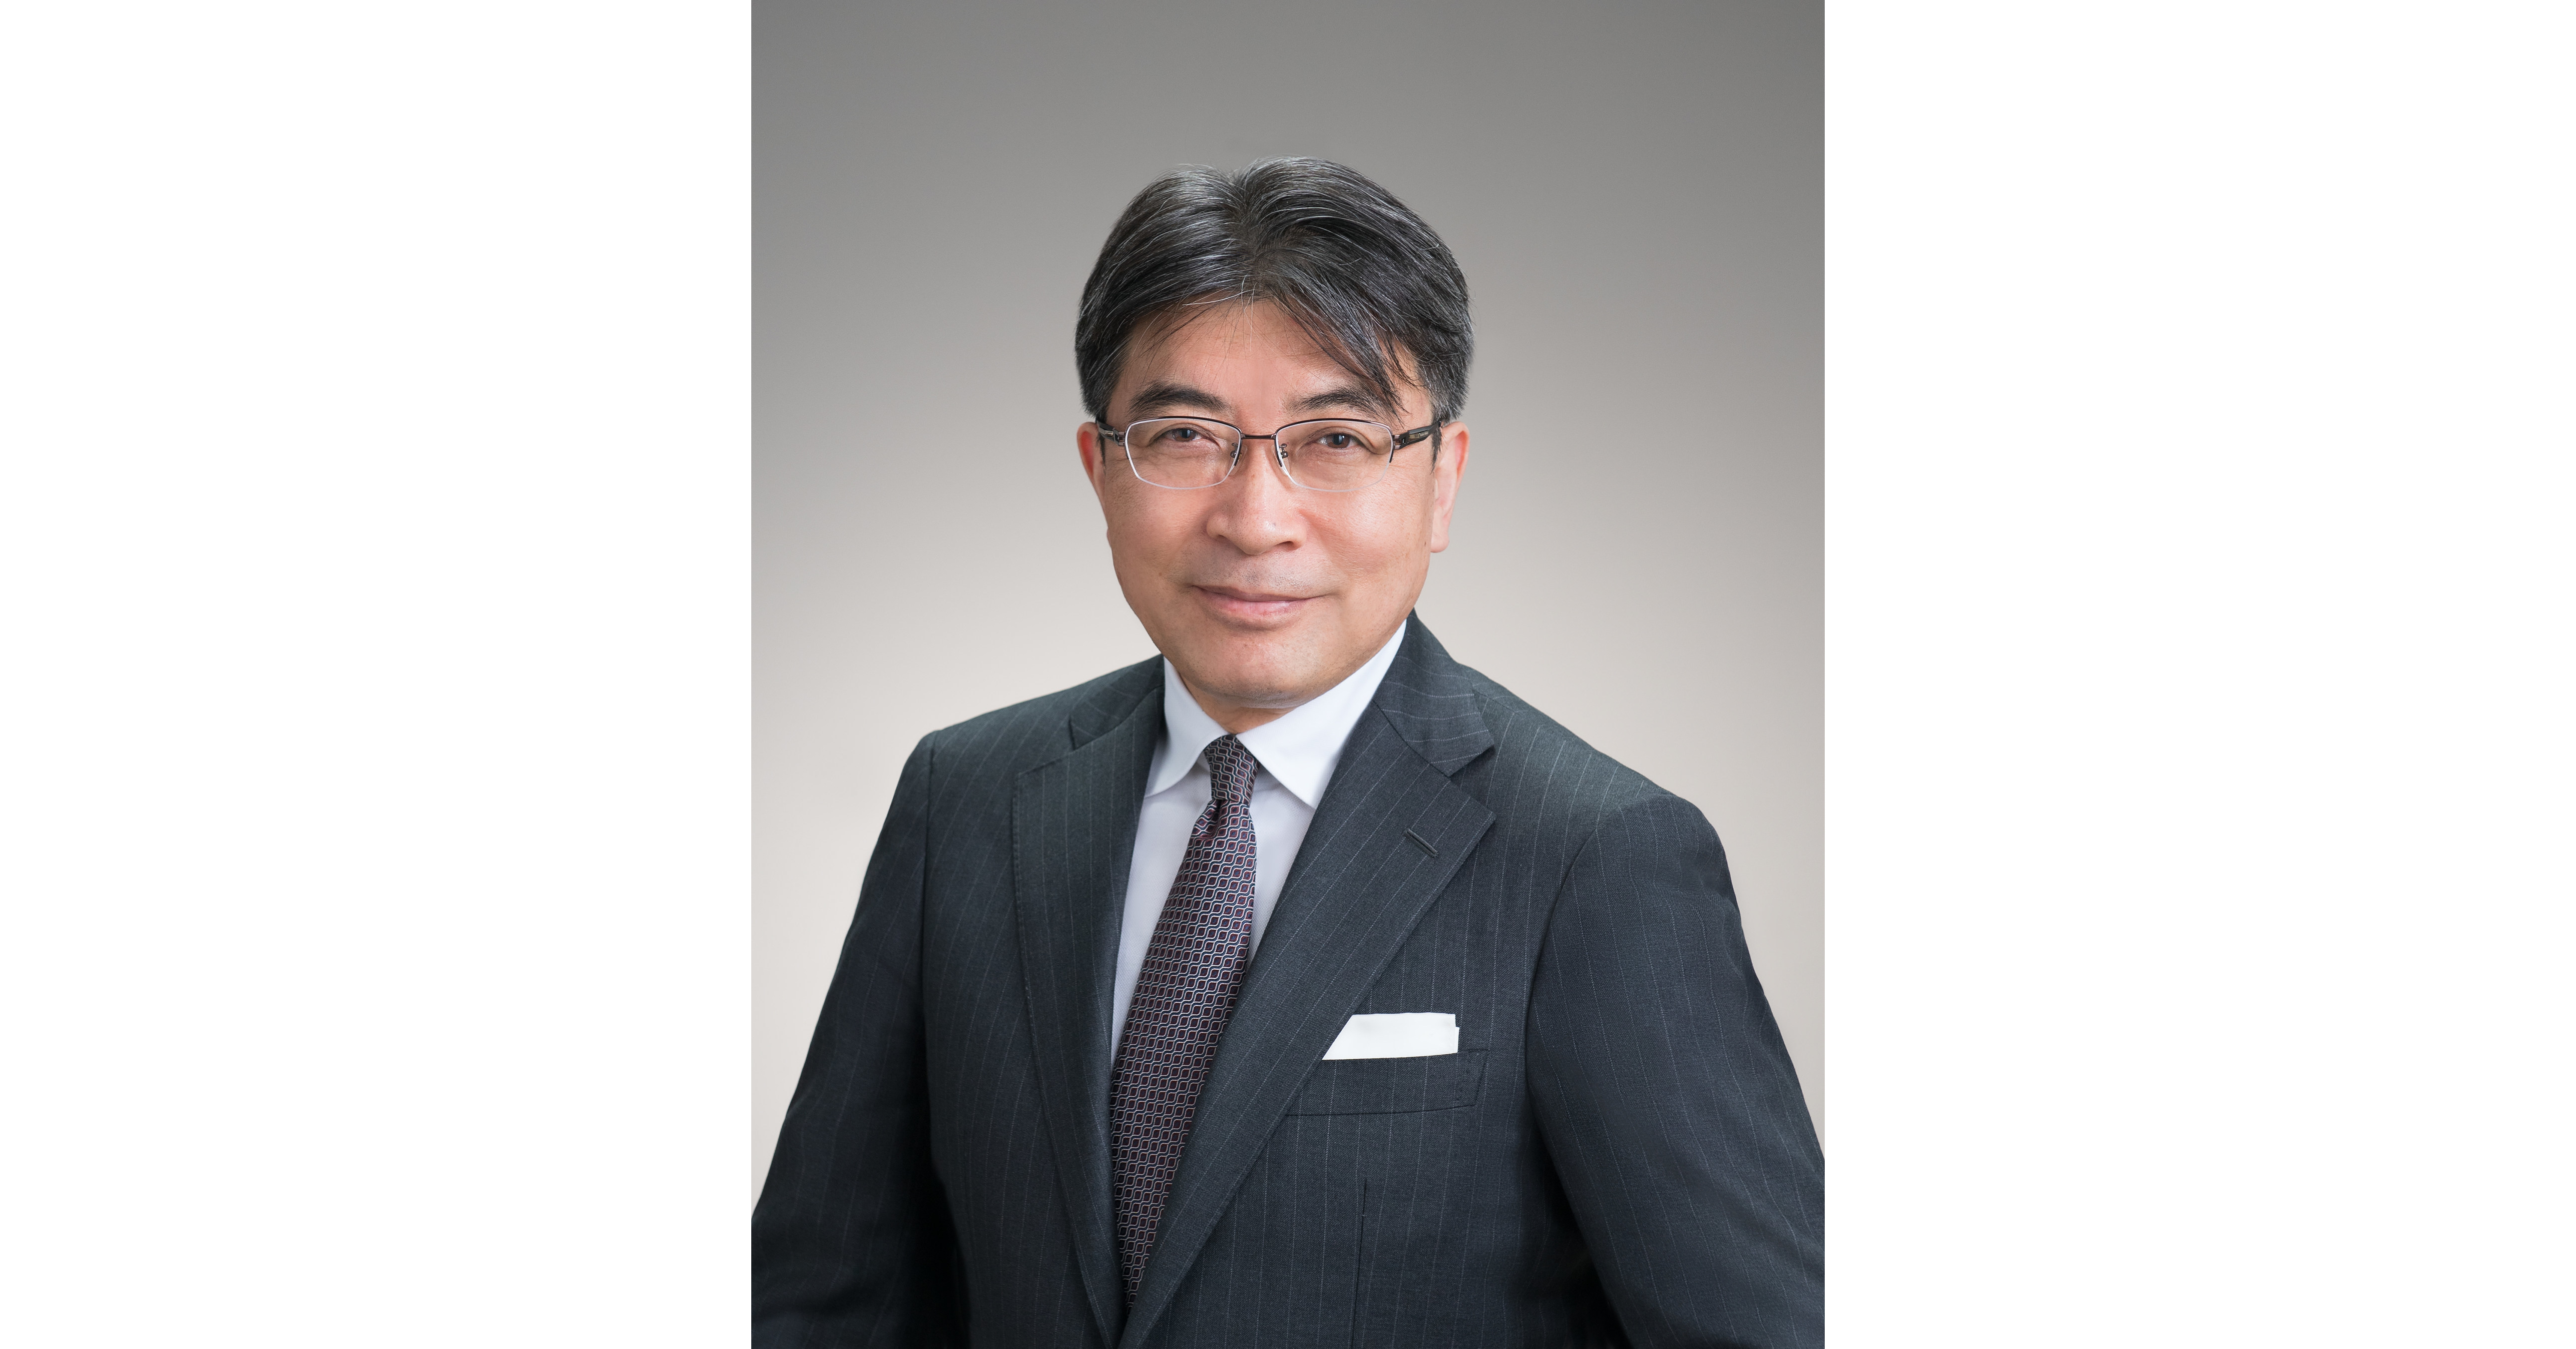 Seiko Watch Corporation Appoints Akio Naito As New President